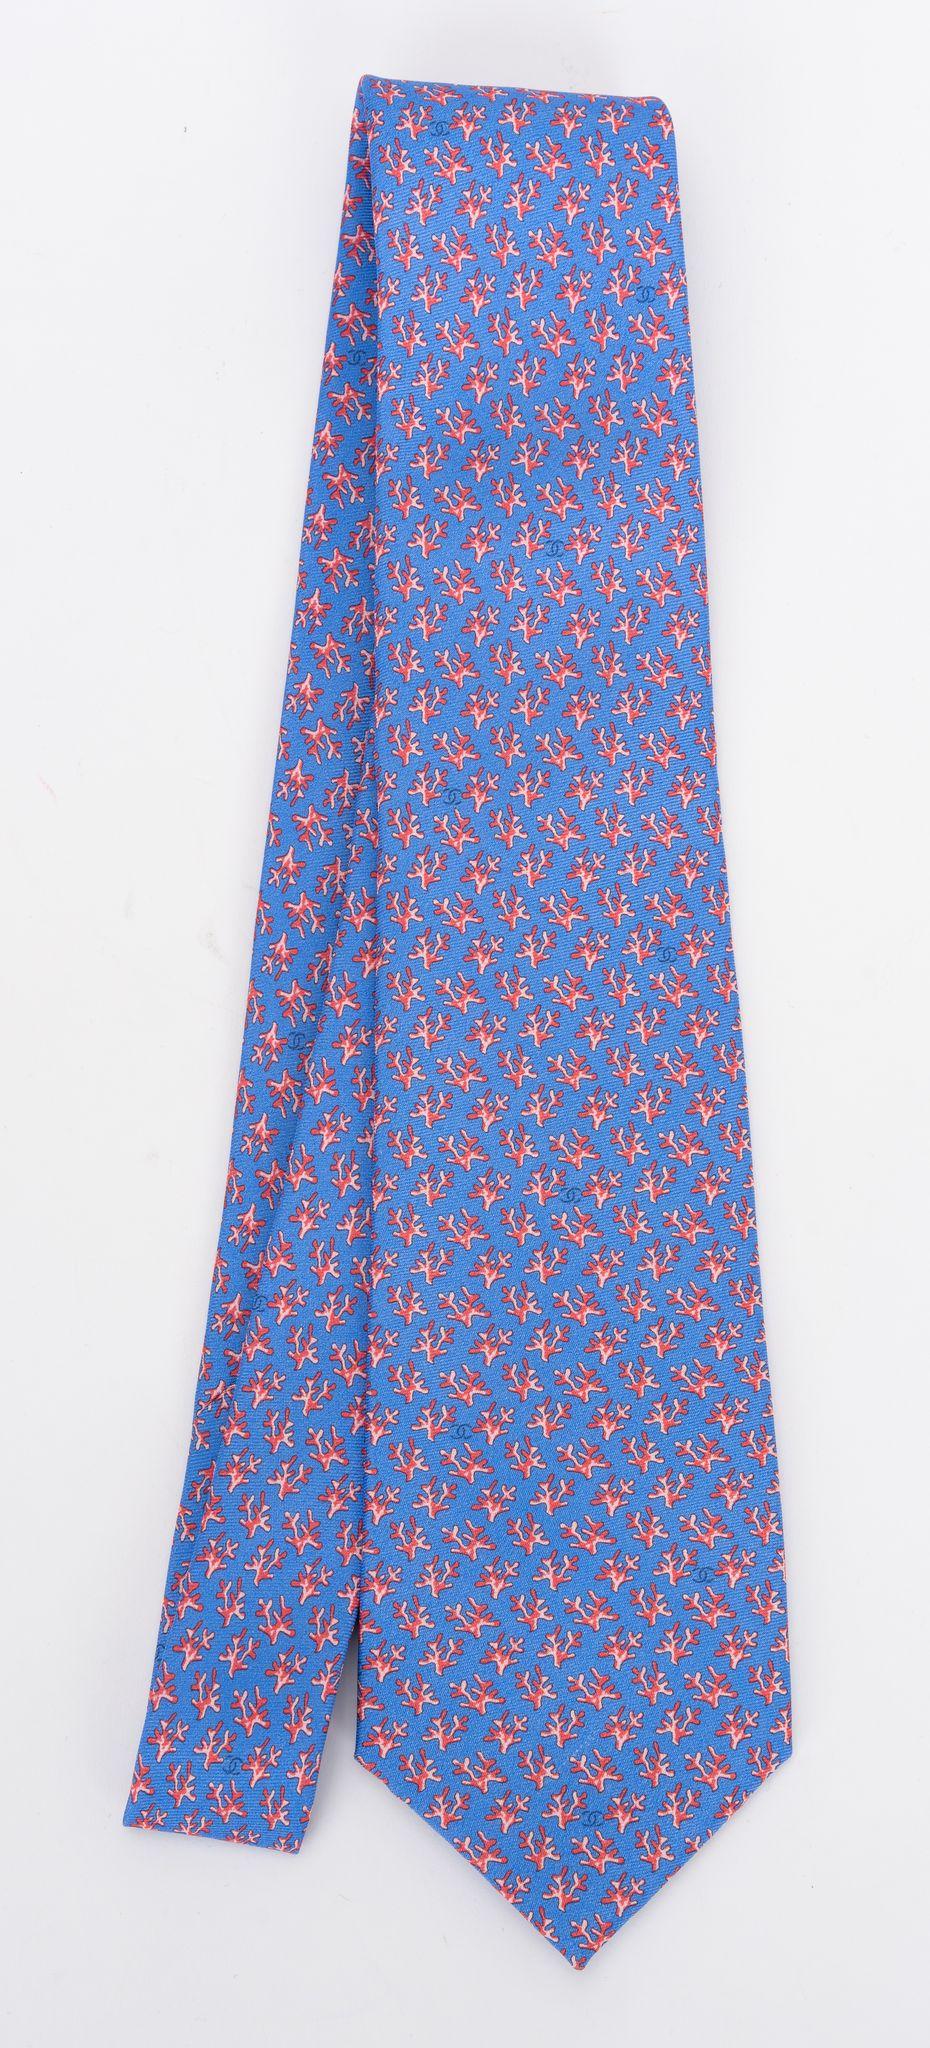 Cravate neuve 100% soie de Chanel à motif de branches de corail bleu. Label de composition, étiquette de marque et chaîne de signature. Livré avec l'enveloppe d'origine.